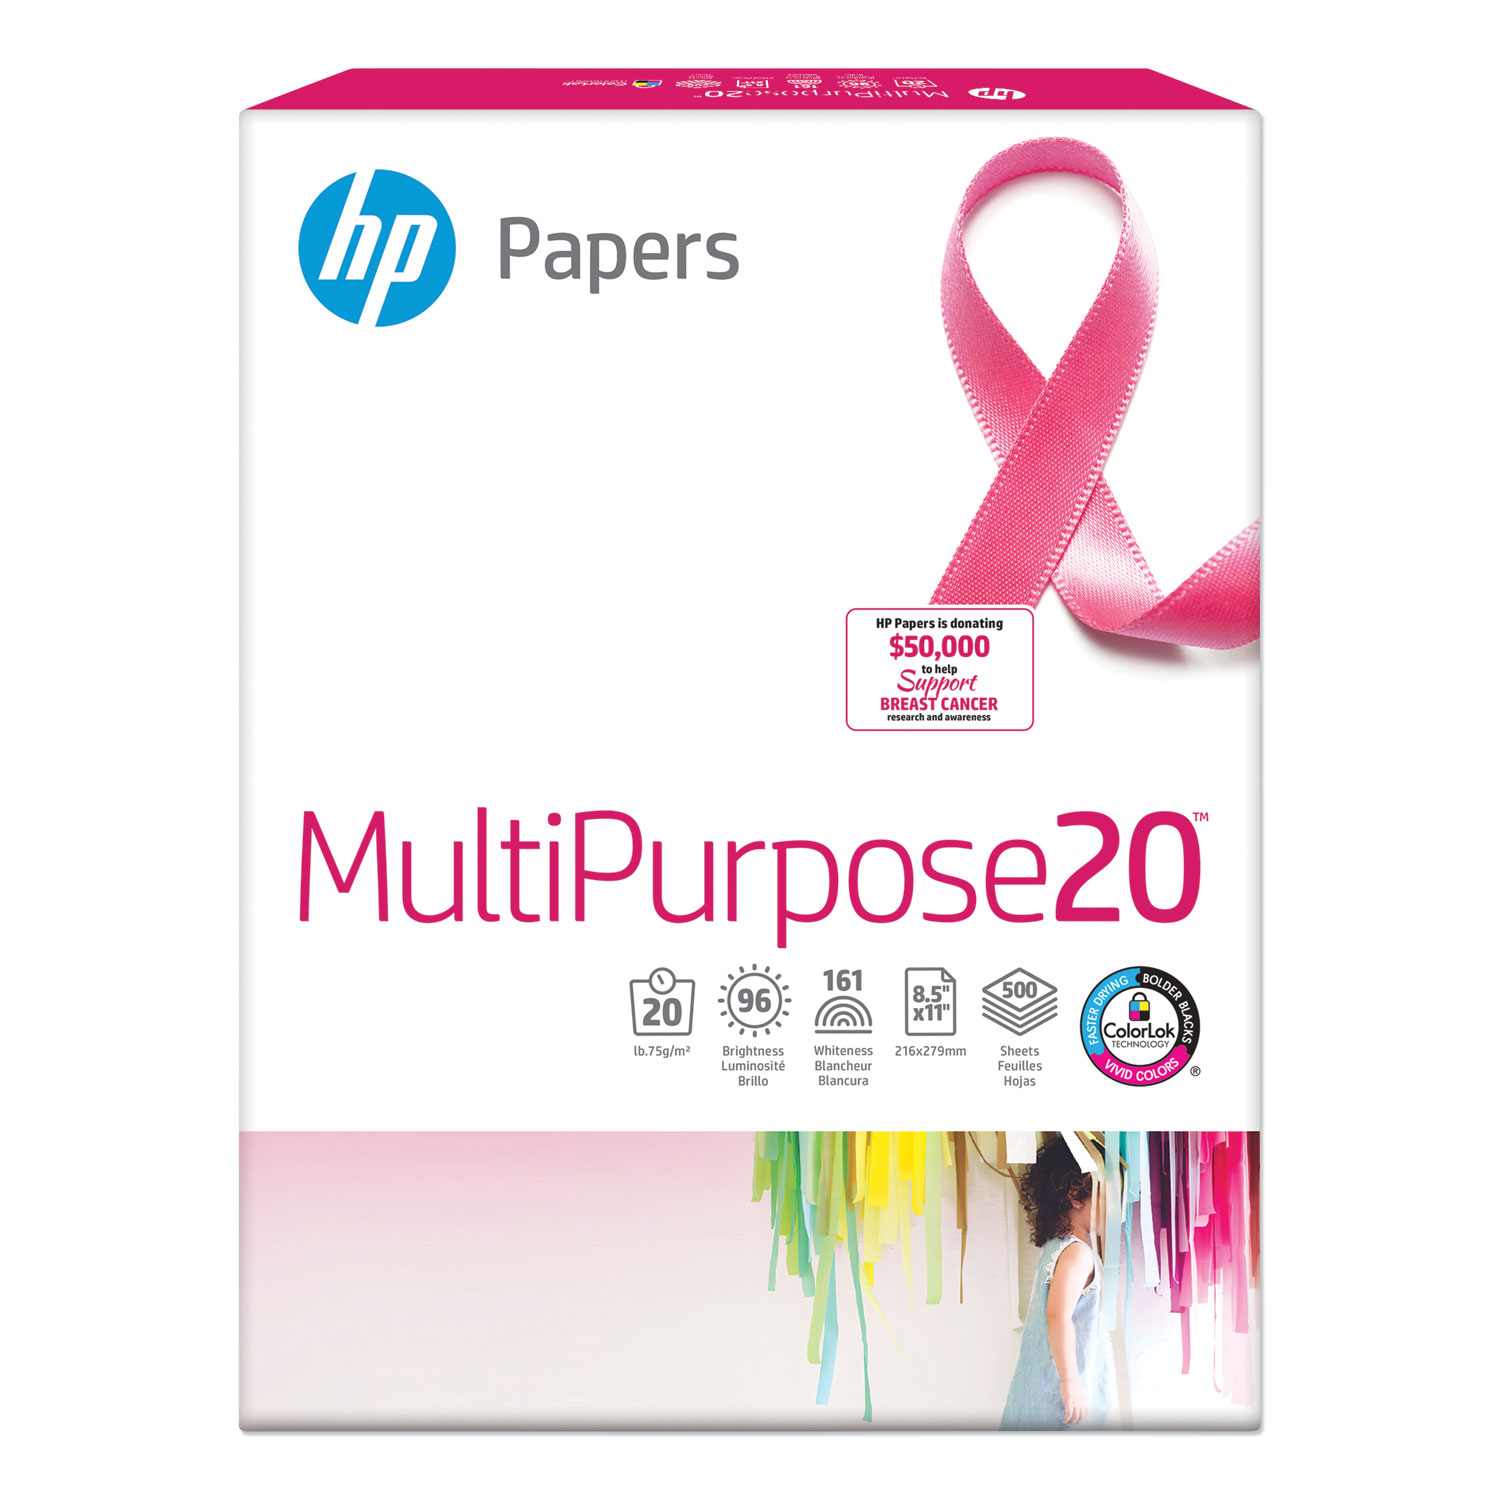 MultiPurpose20 Paper, 96 Bright, 20lb, 8.5 x 11, White, 500 Sheets/Ream, 10 Reams/Carton